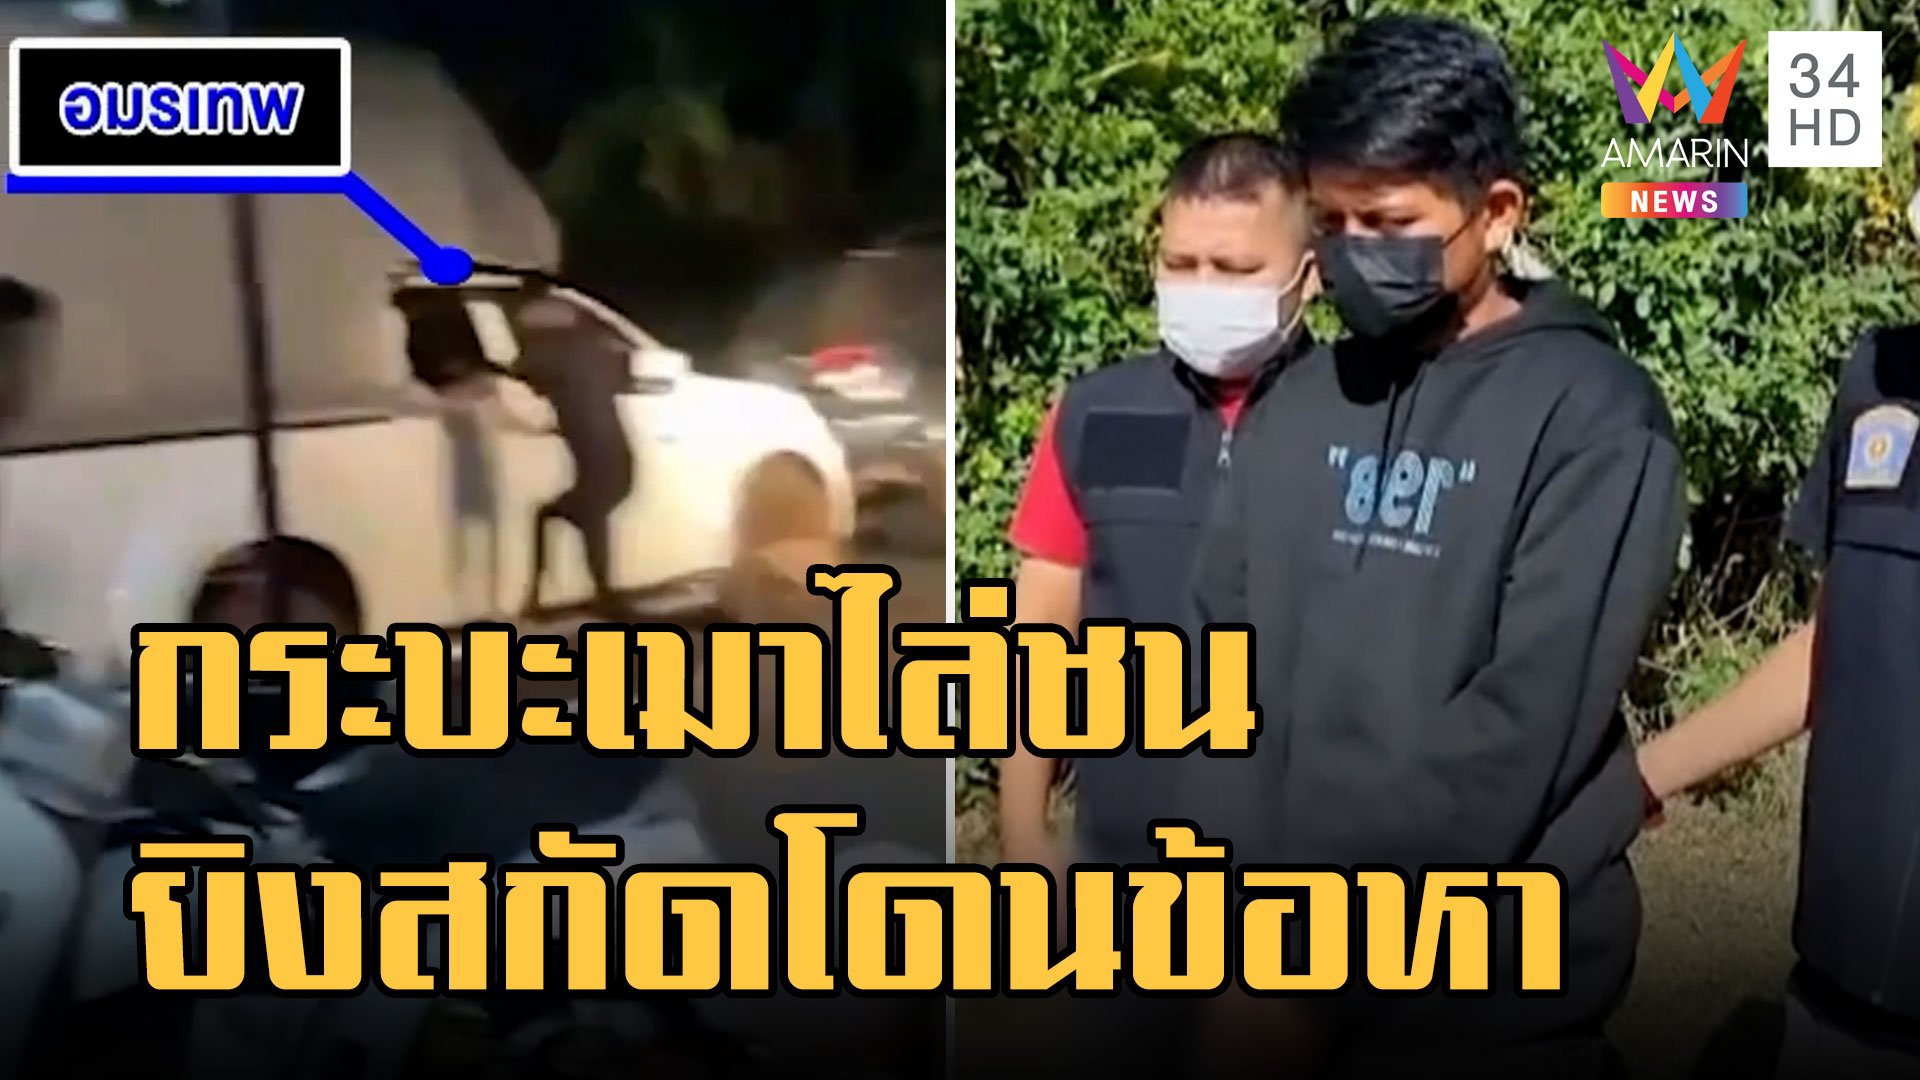 กระบะเมาขับไล่ชน พลเมืองดียิงยางสกัดโดนข้อหาหนัก | ข่าวเที่ยงอมรินทร์ | 13 พ.ย. 65 | AMARIN TVHD34